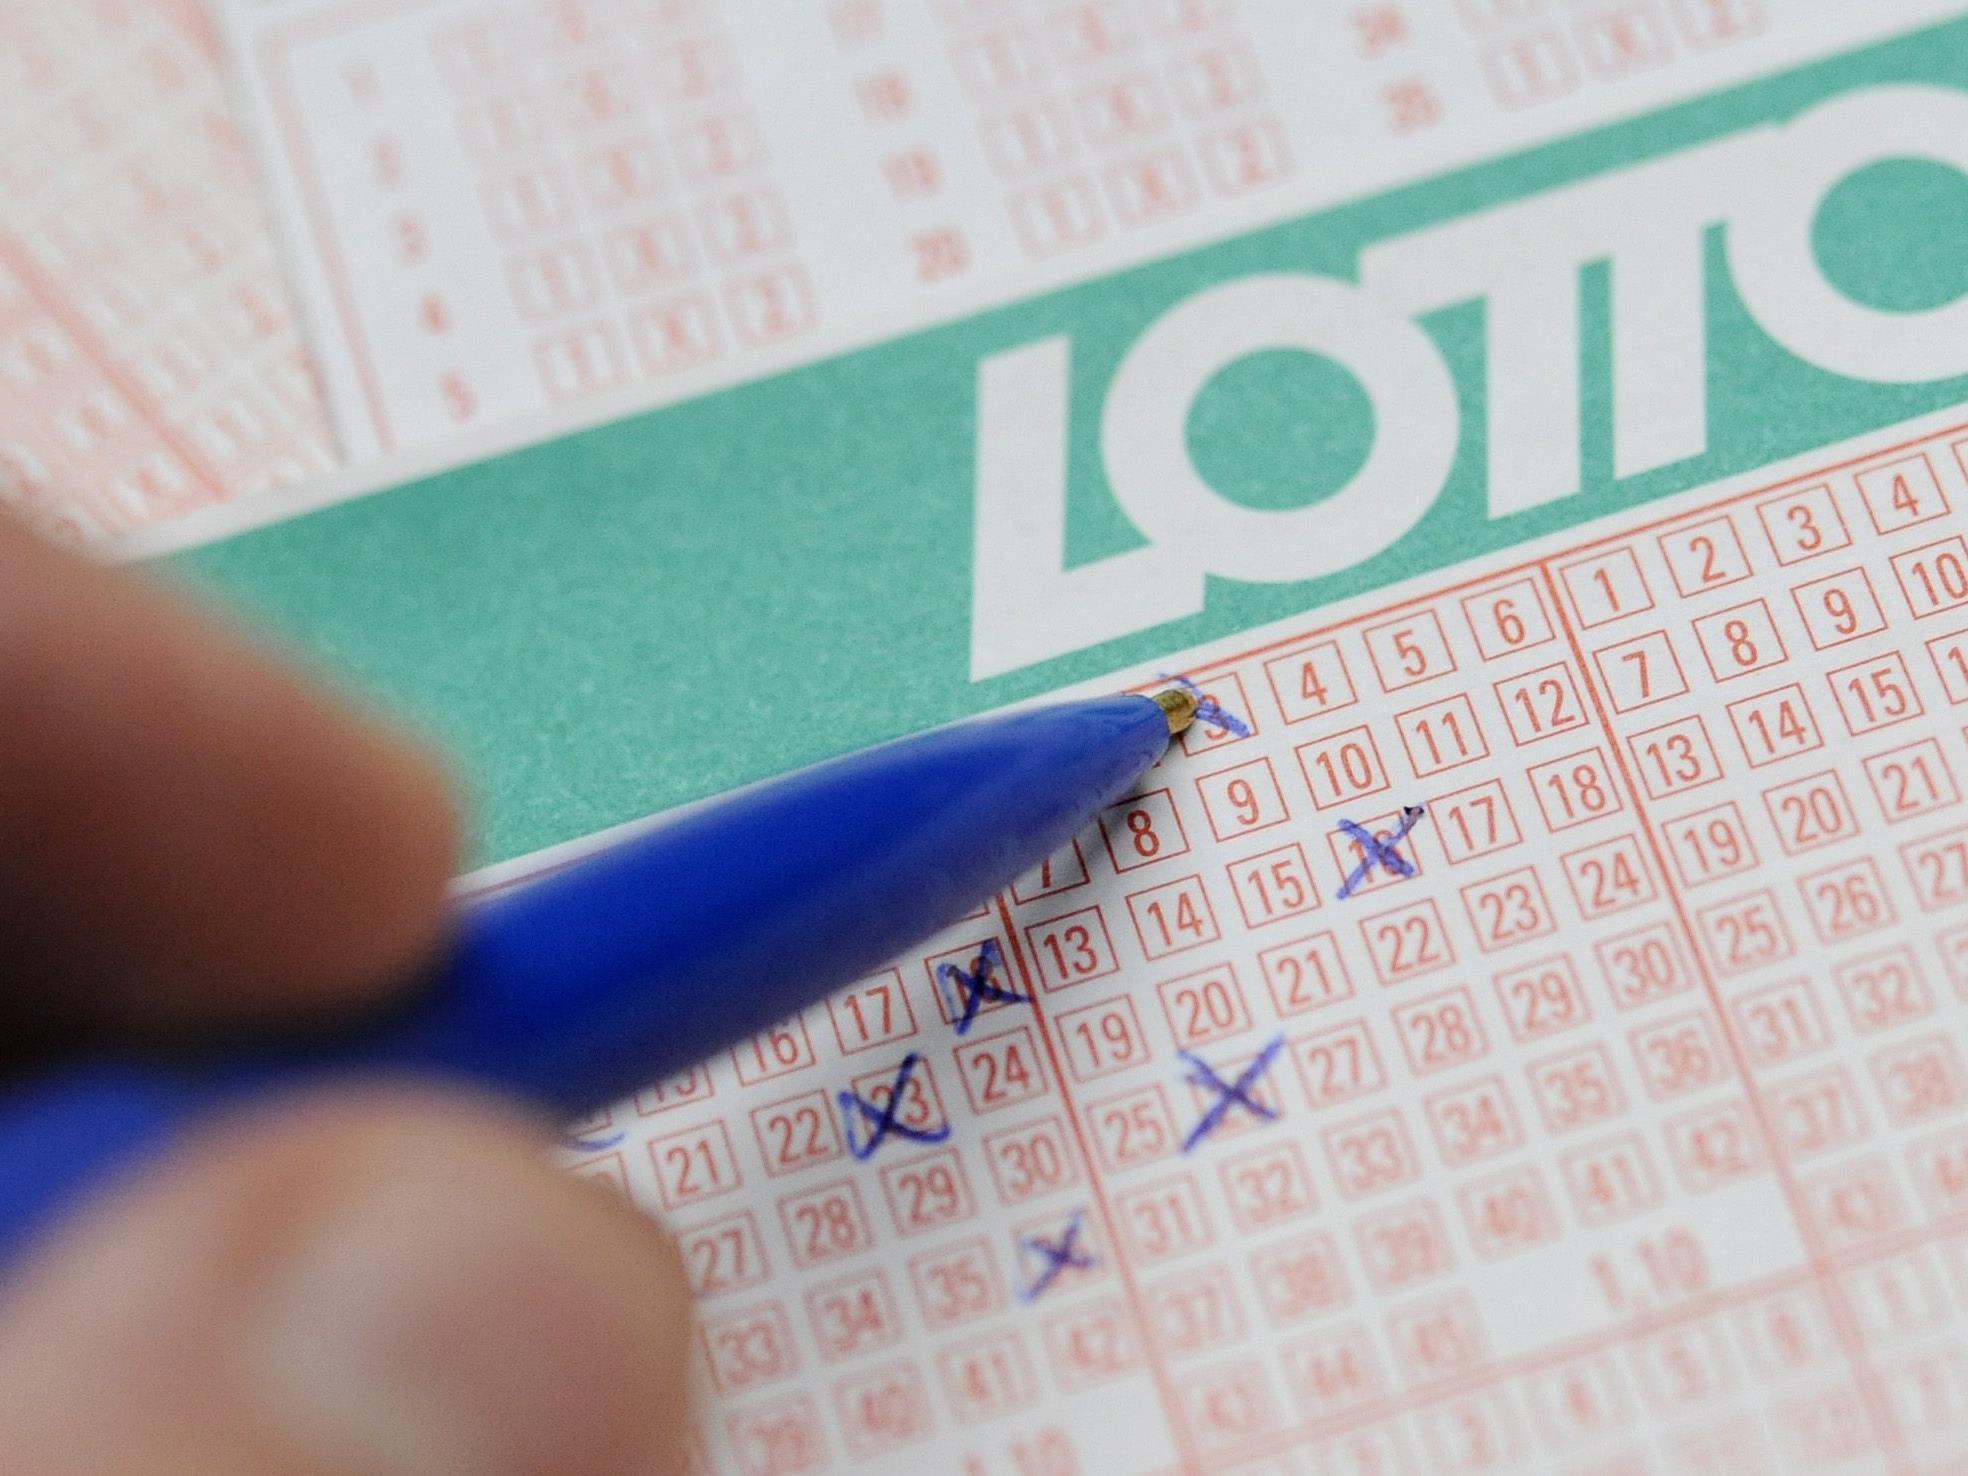 Rund drei Millionen Euro warten am Mittwoch im Lotto-Jackpot.